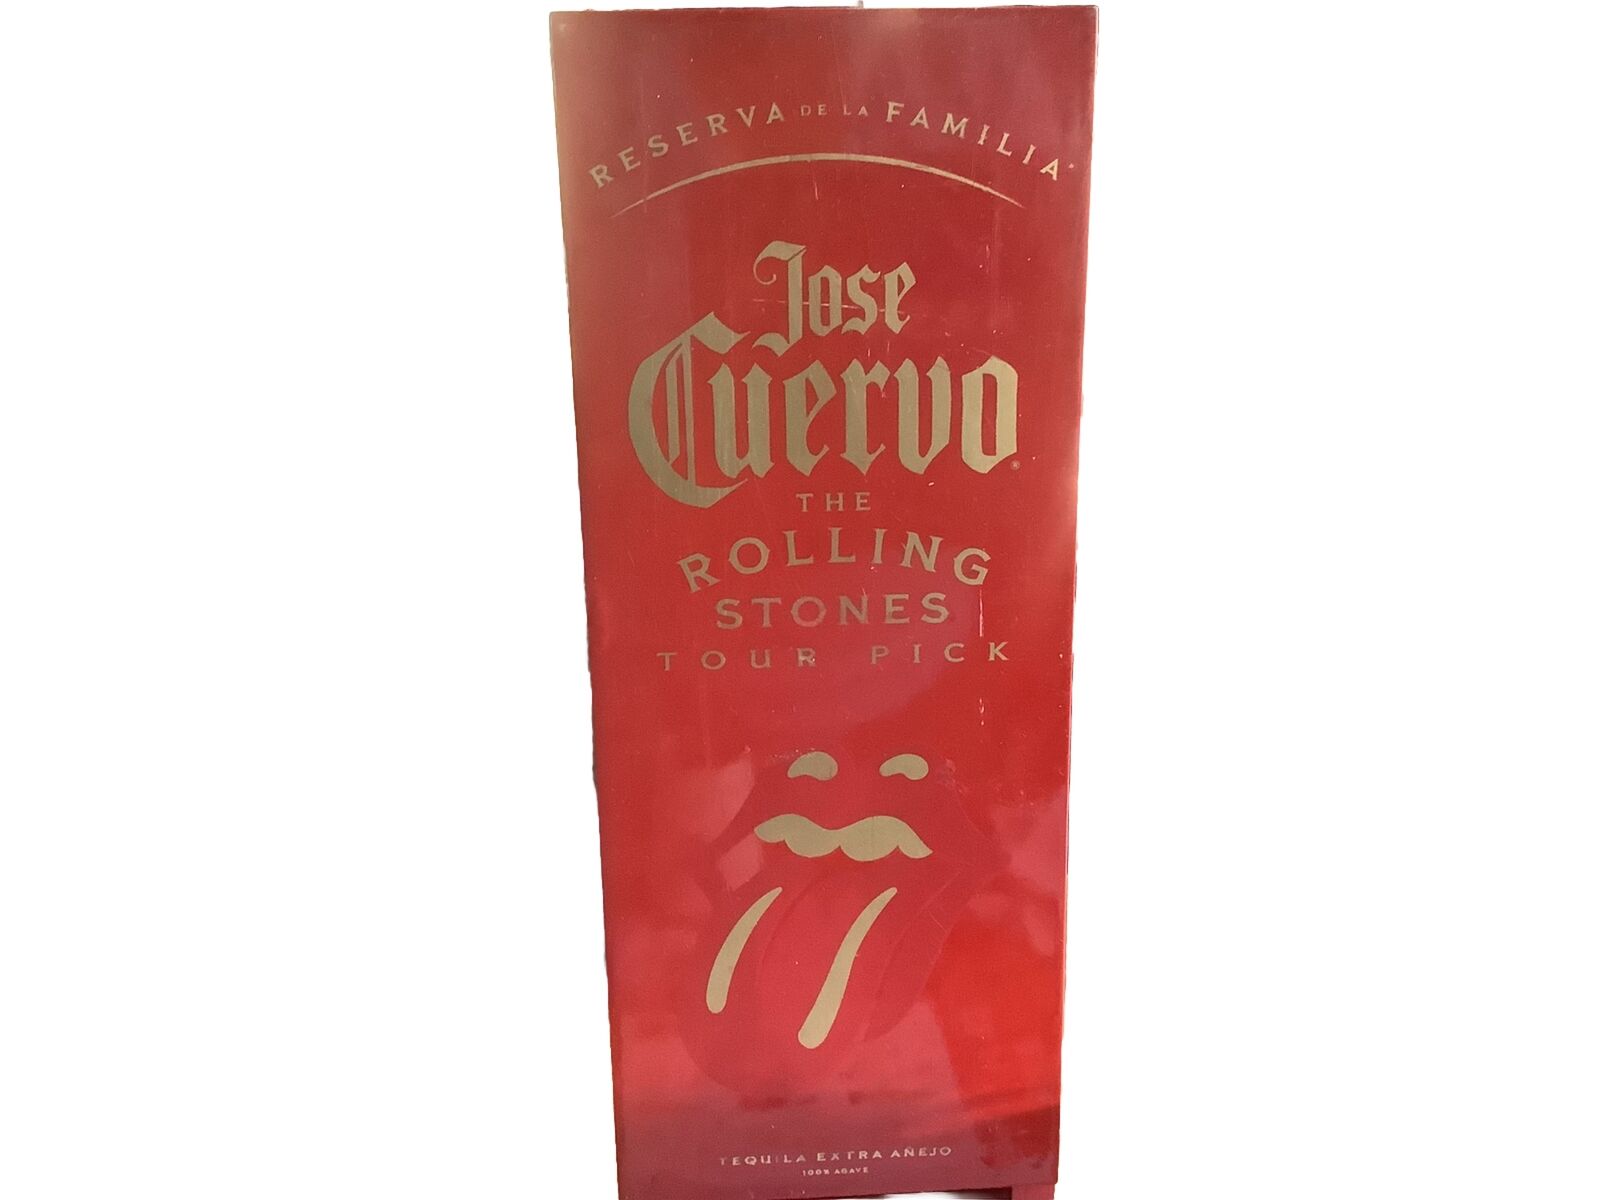 Jose Cuervo Reserva De La Familia Rolling Stones Tour Pick Empty Box